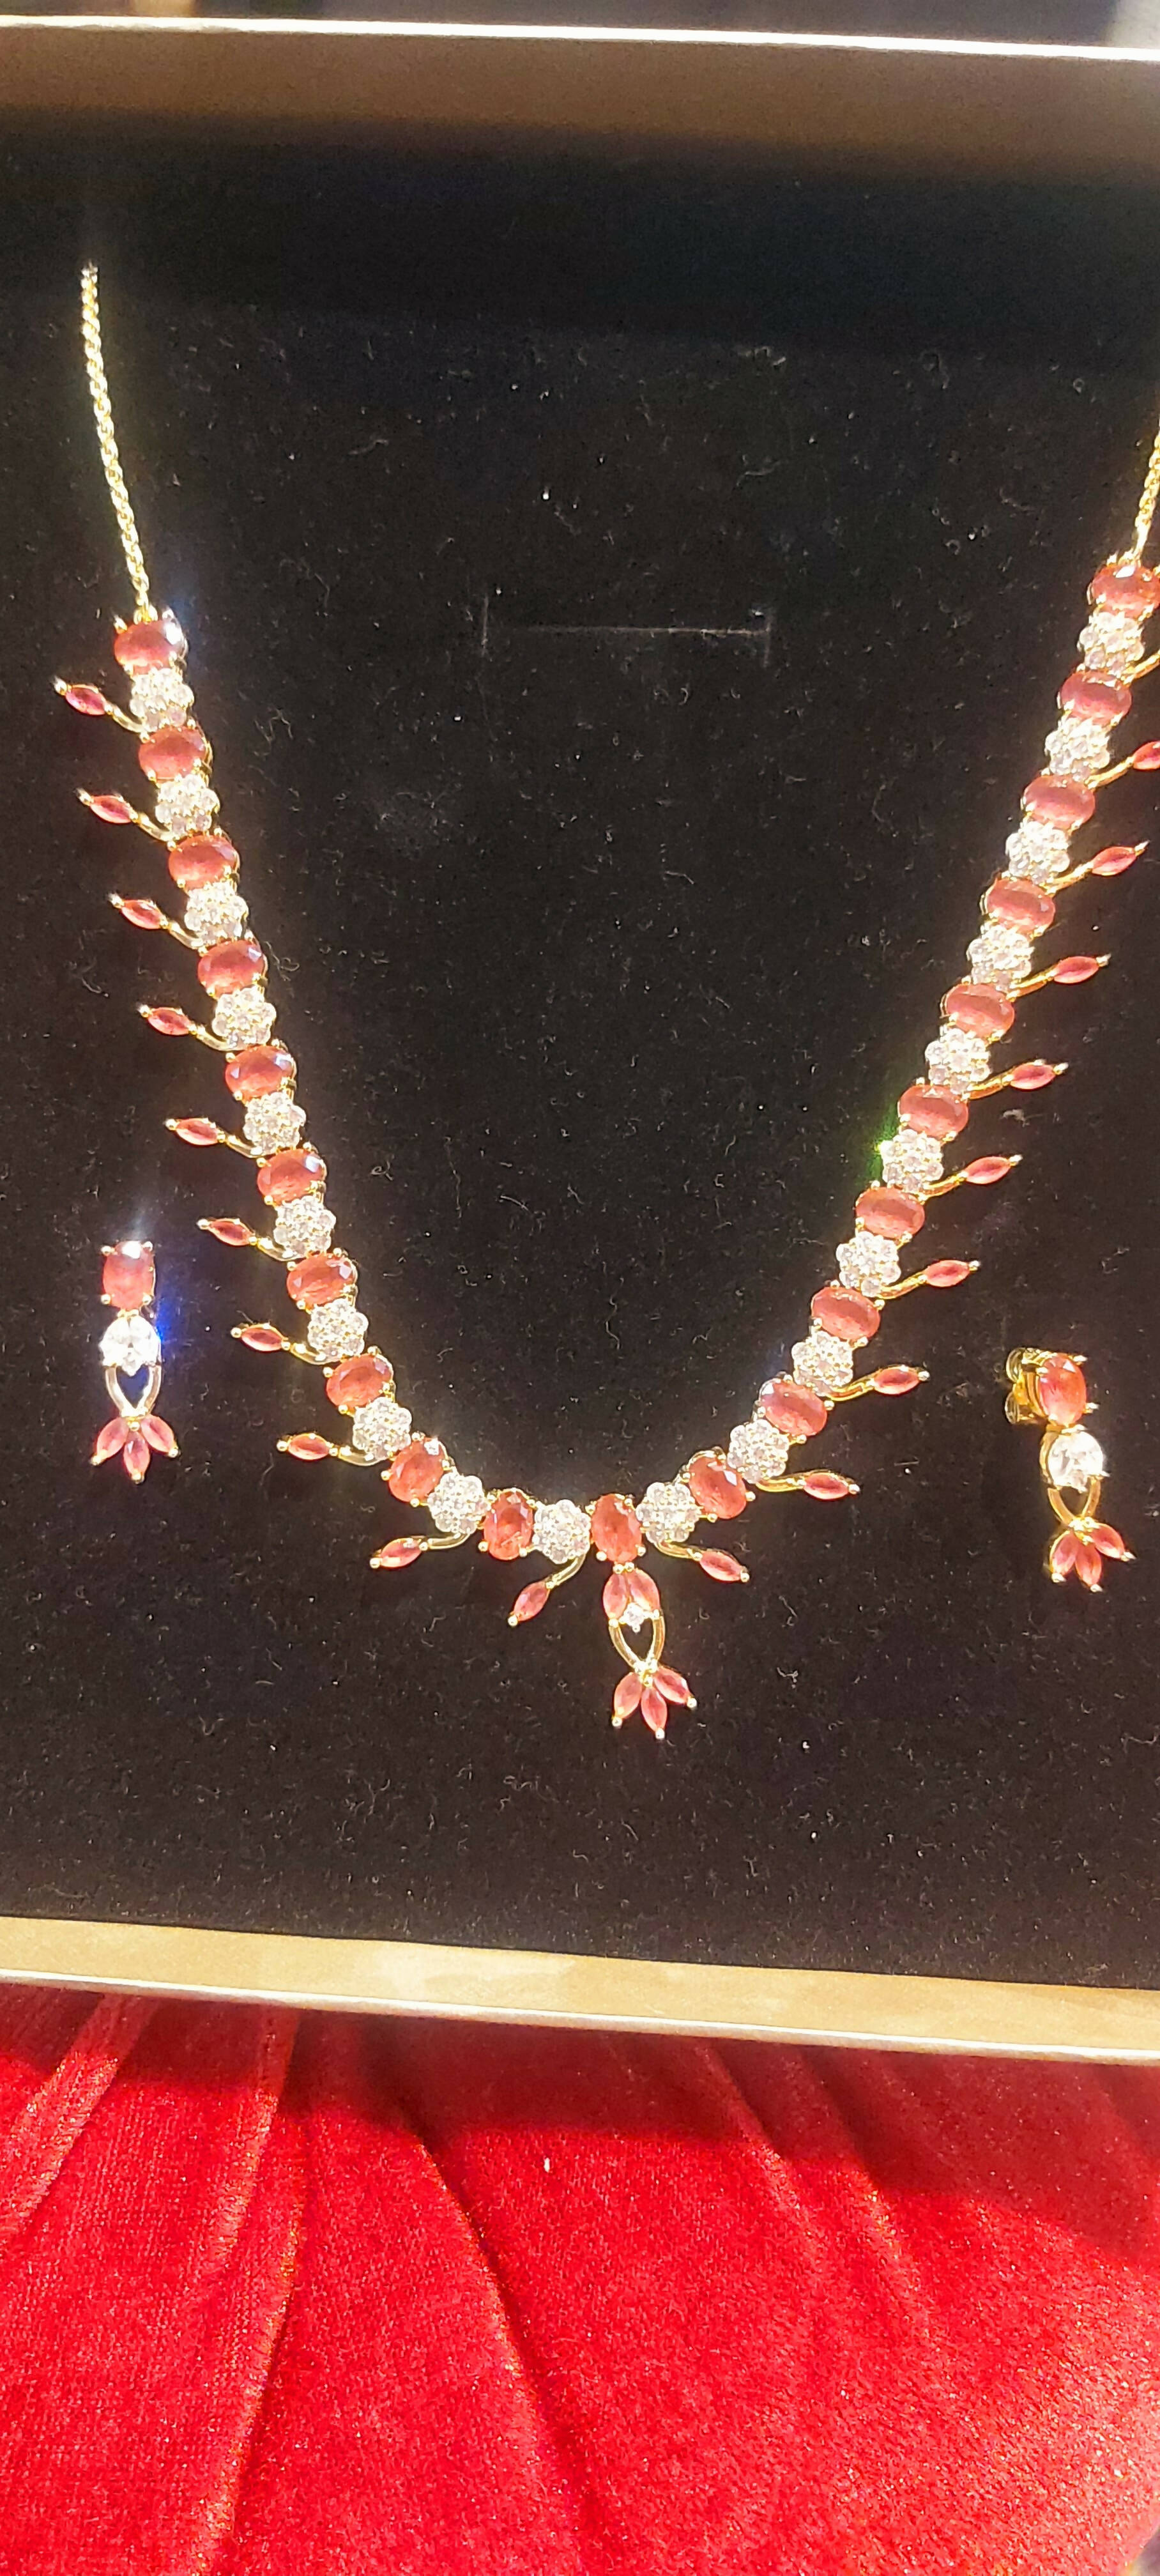 Pink Zircon jewelry set | Women Jewelry & Sets | New